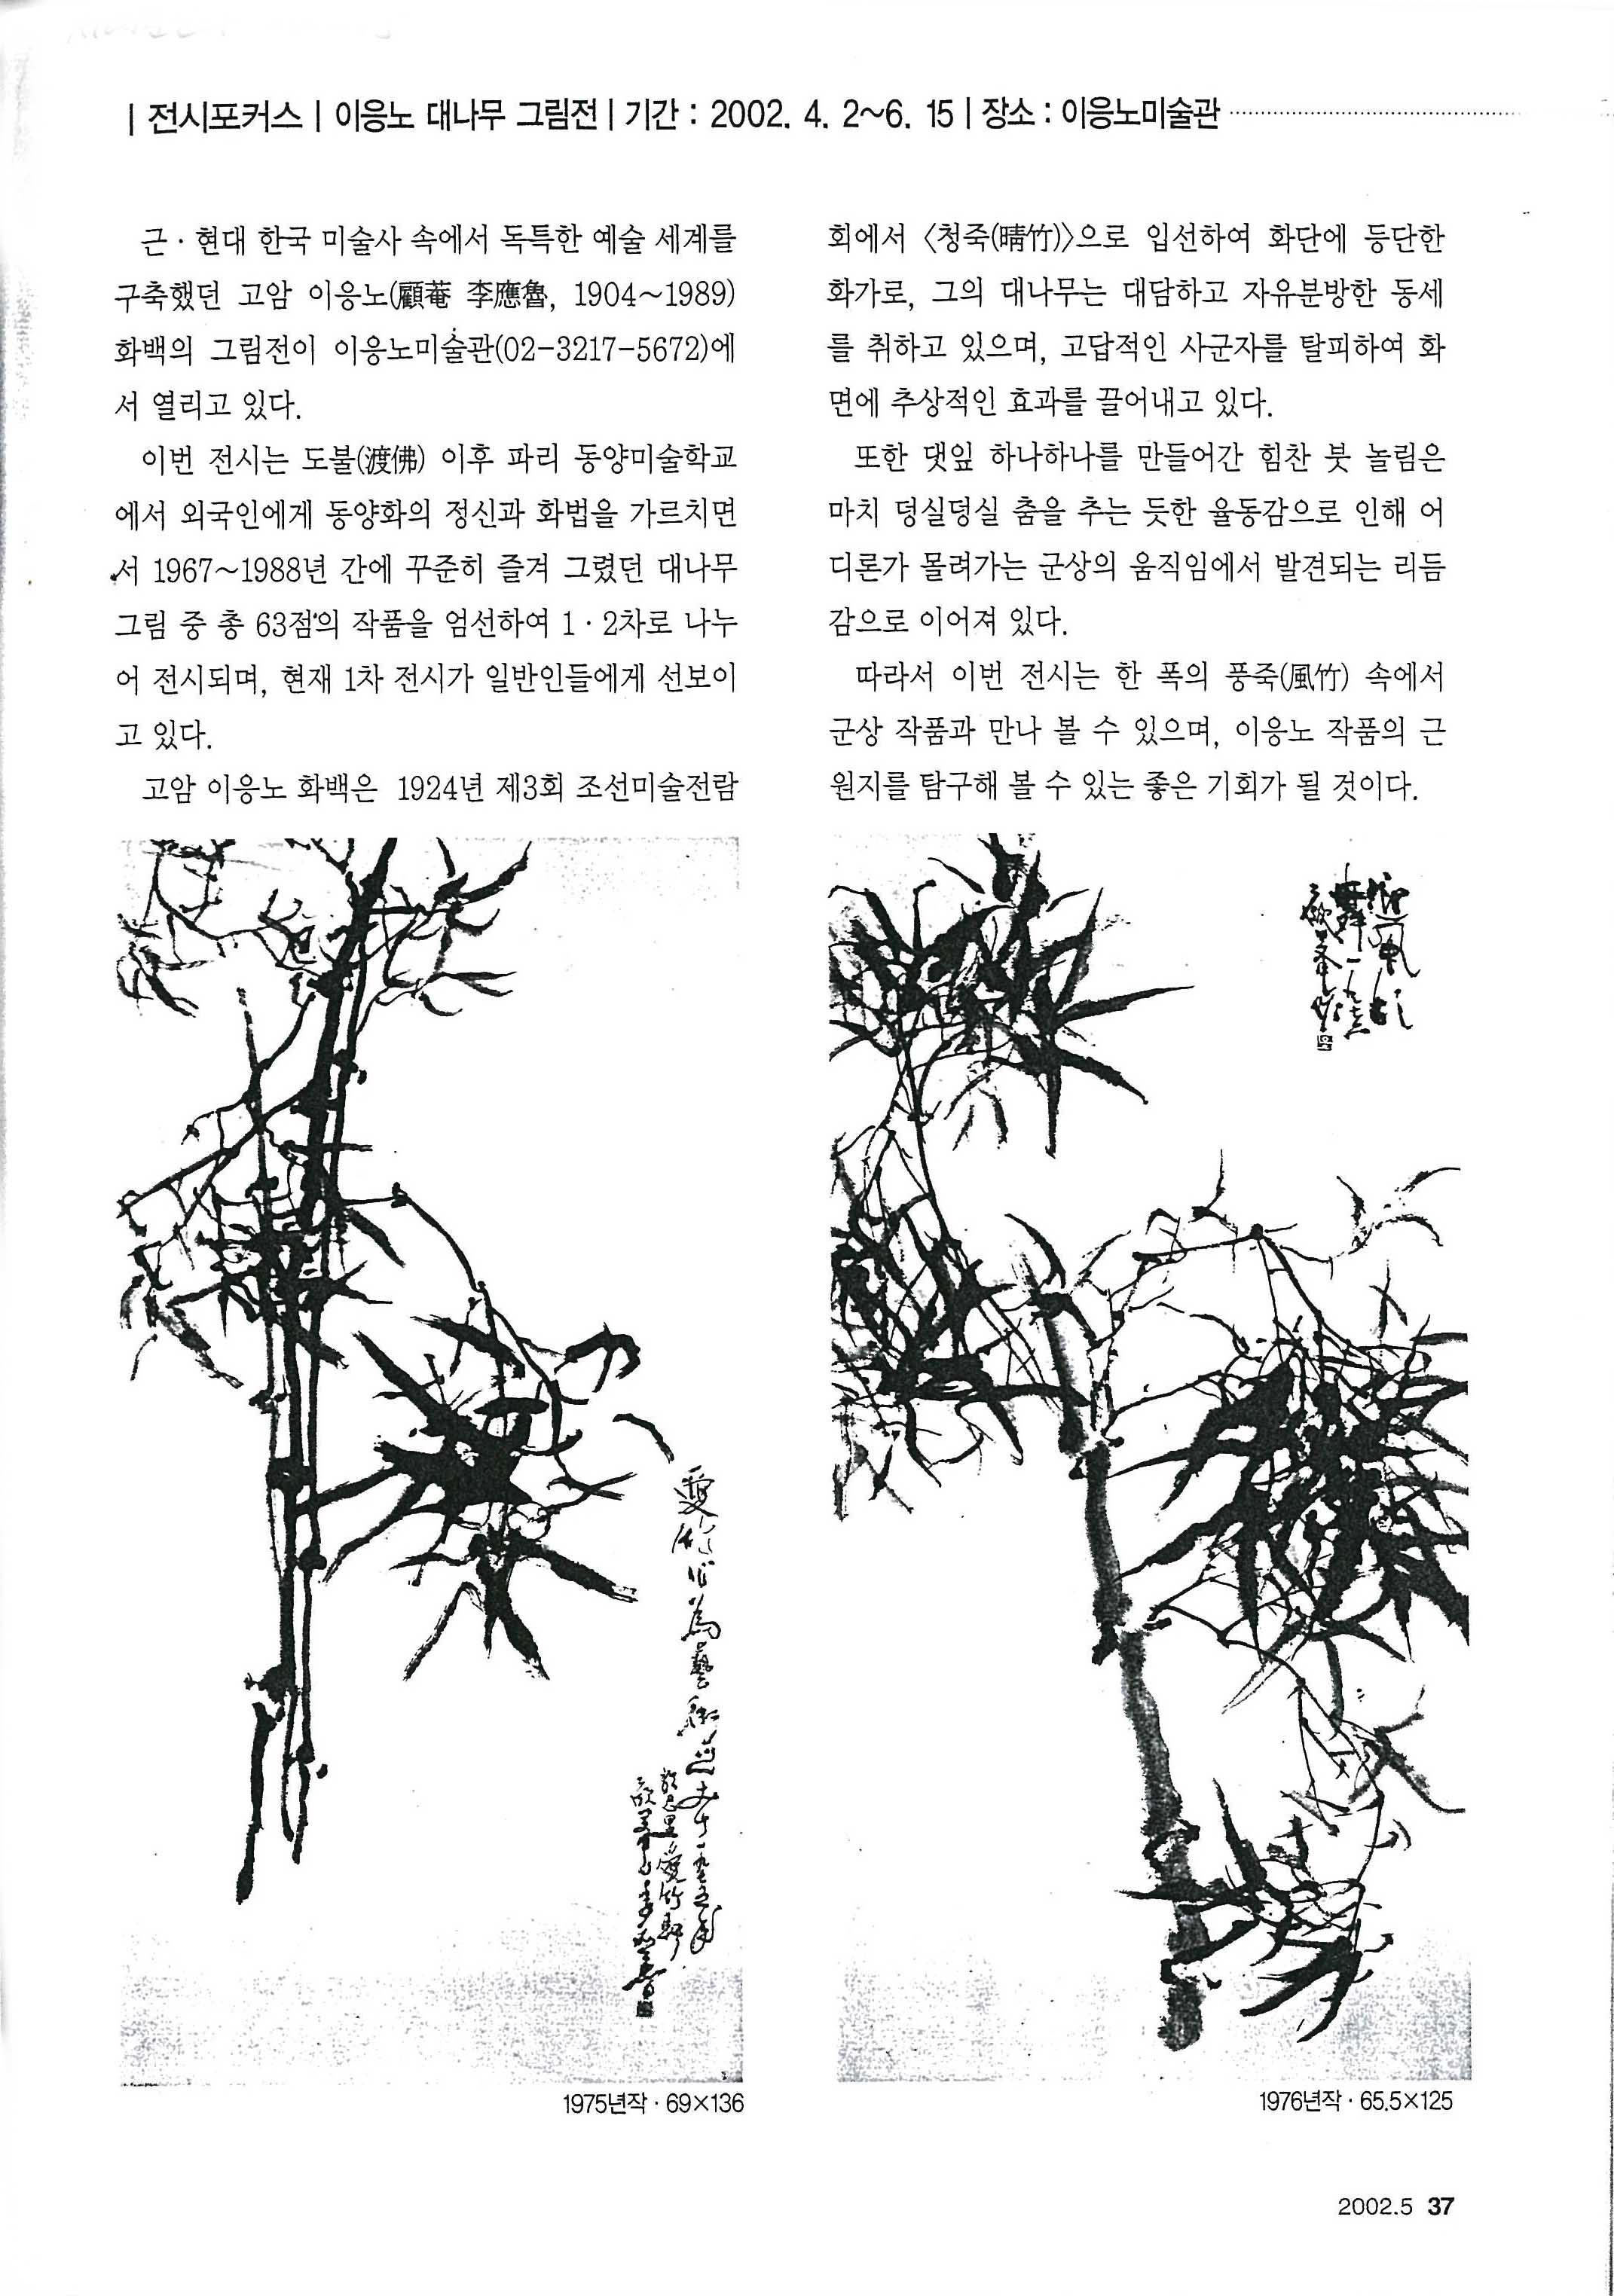  「이응노 대나무 그림전」, 『월간 서예문인화』 